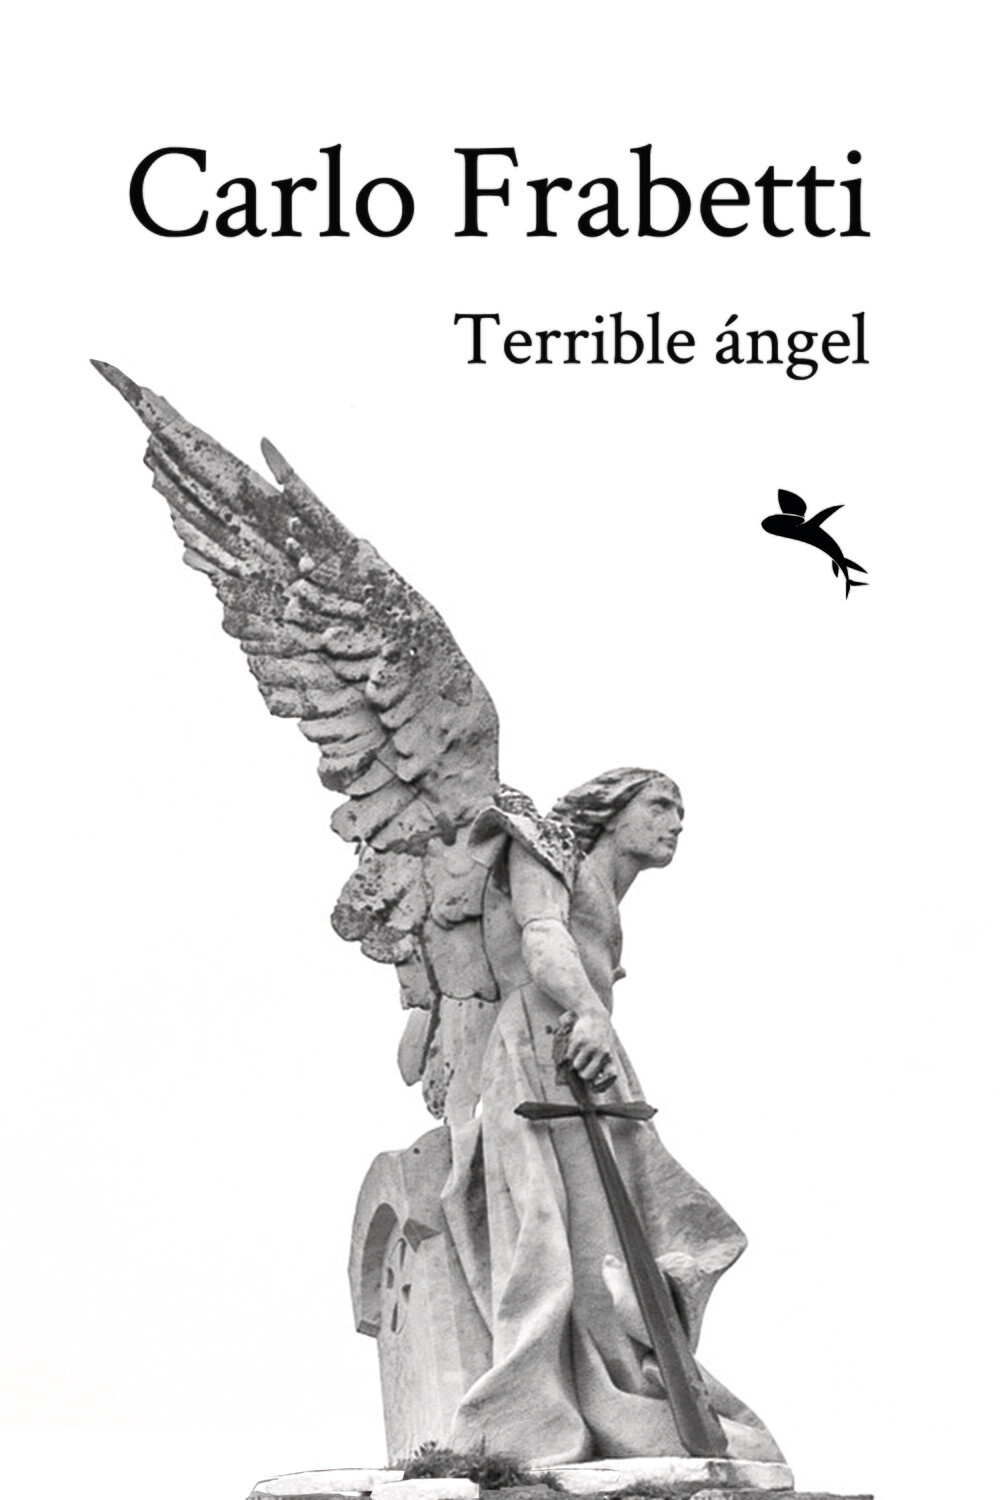 Terrible ángel